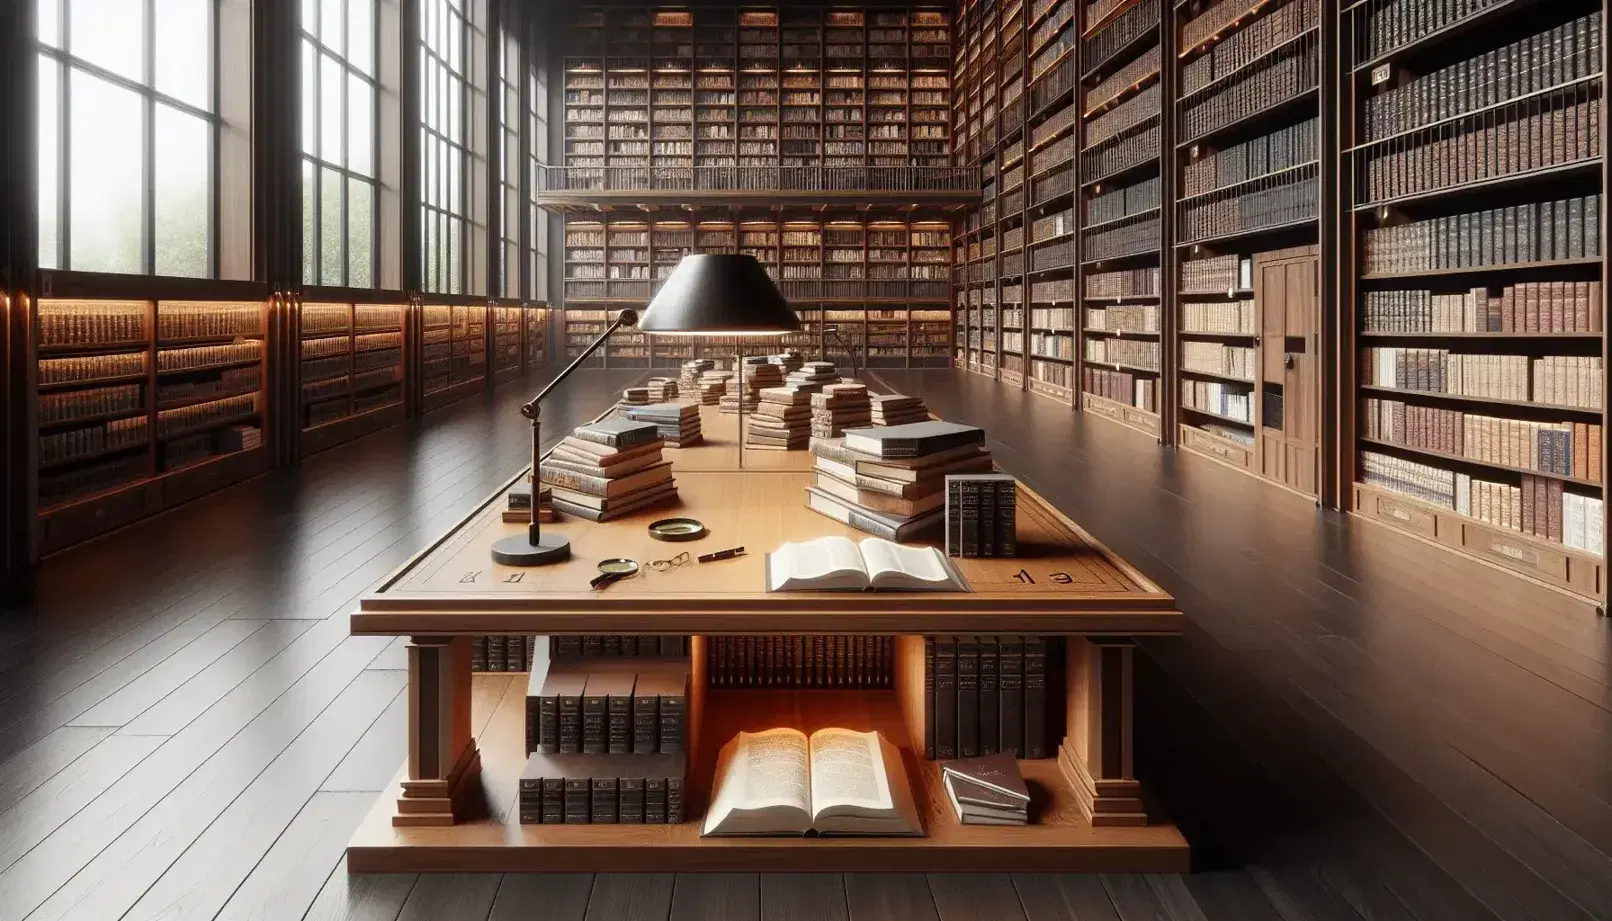 Biblioteca amplia con estanterías de madera llenas de libros, mesa central con libros abiertos, lupa y lámpara, y ventana que aporta luz natural.